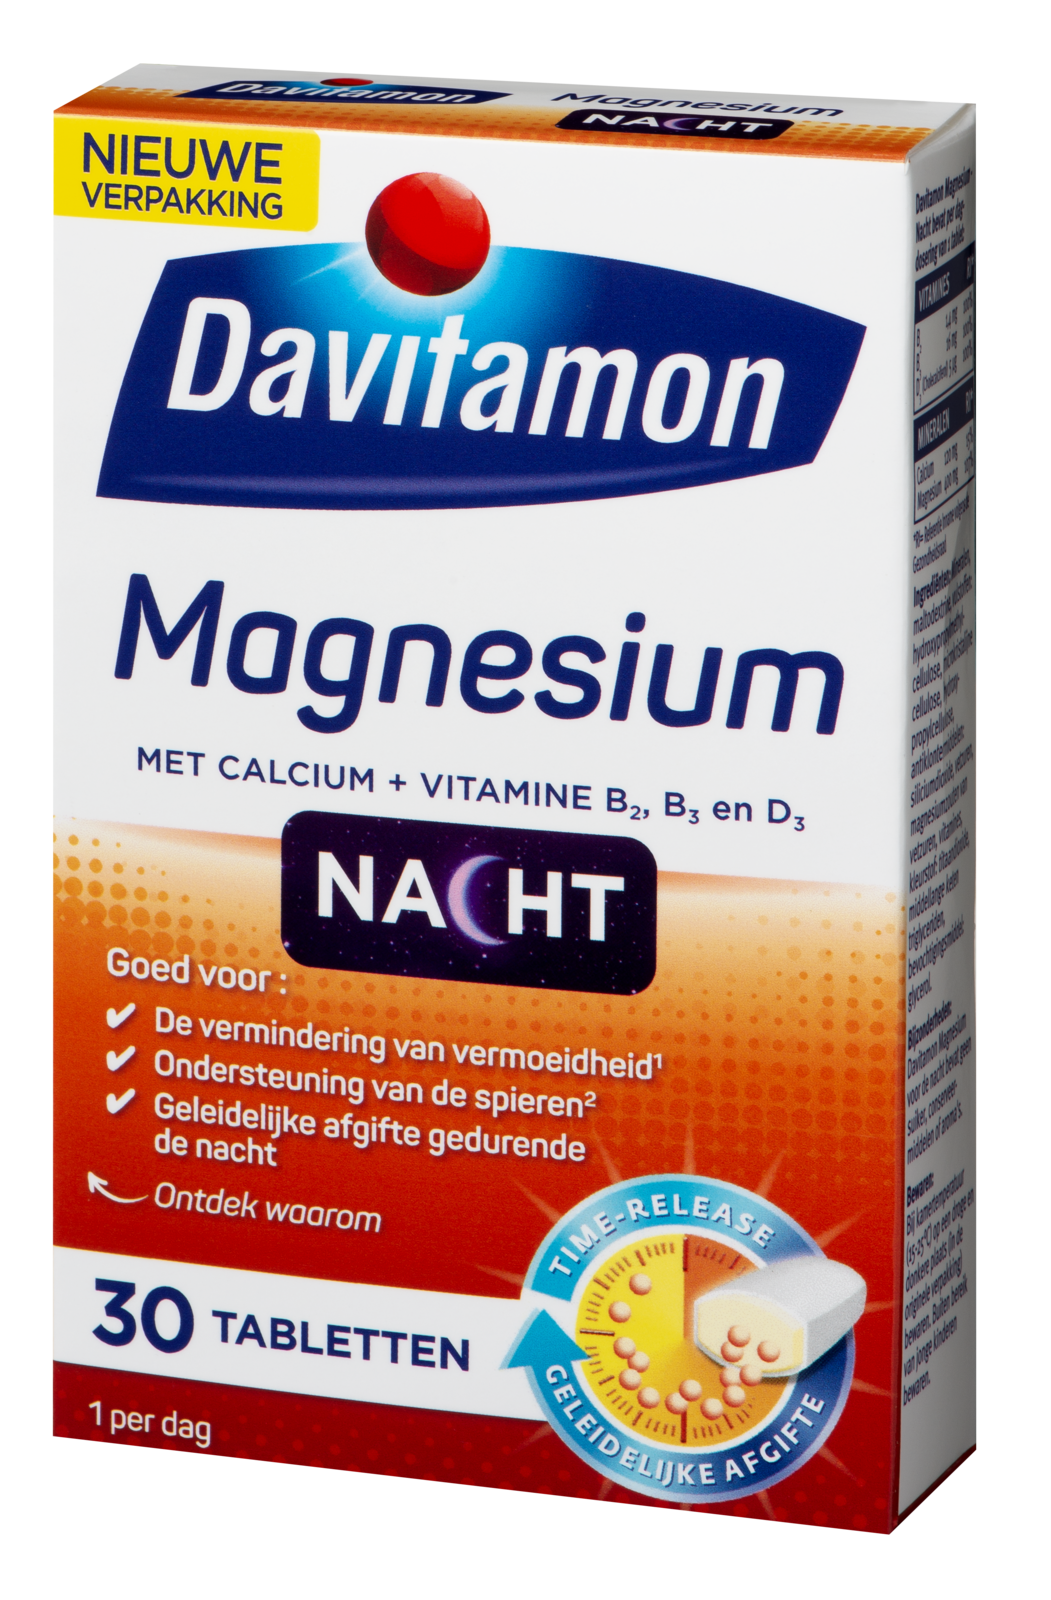 Davitamon Magnesium Voor De Nacht Tabletten 30st kopen